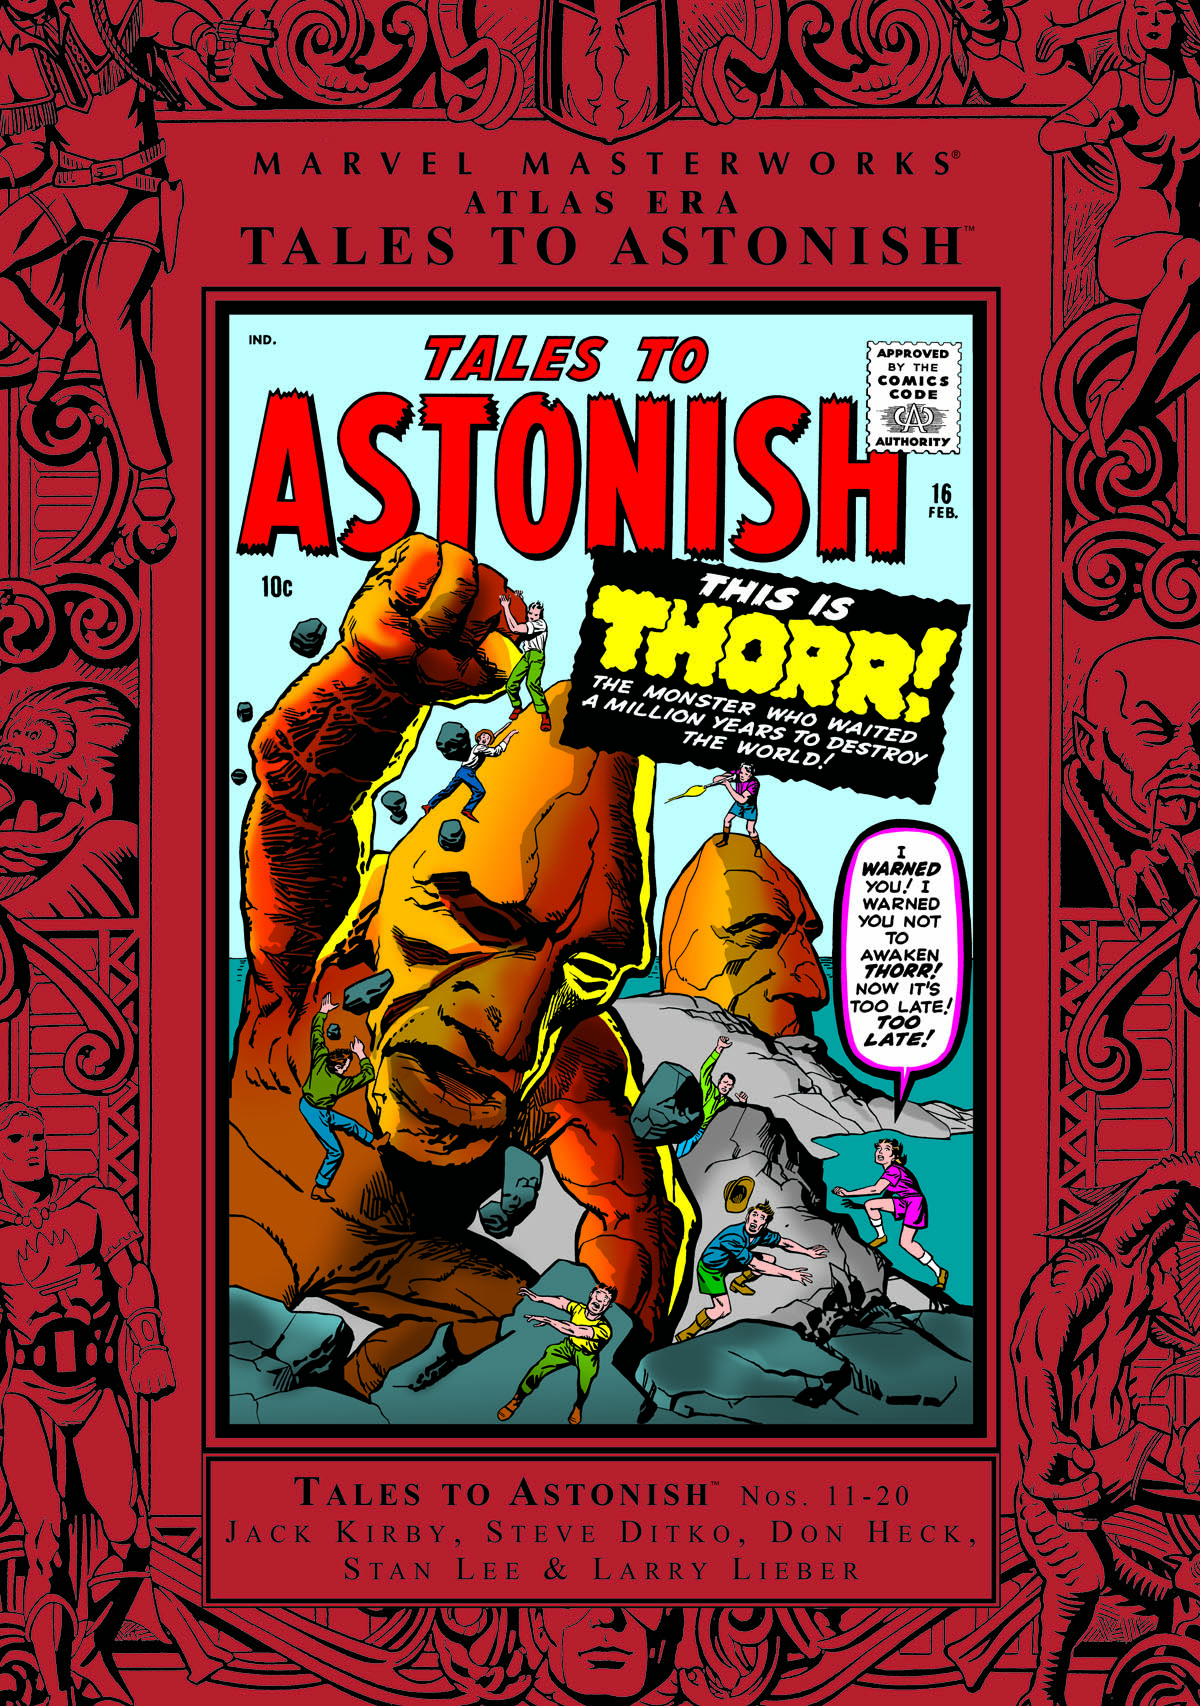 Marvel Masterworks: Atlas Era Tales to Astonish Vol. 2 (Trade Paperback)